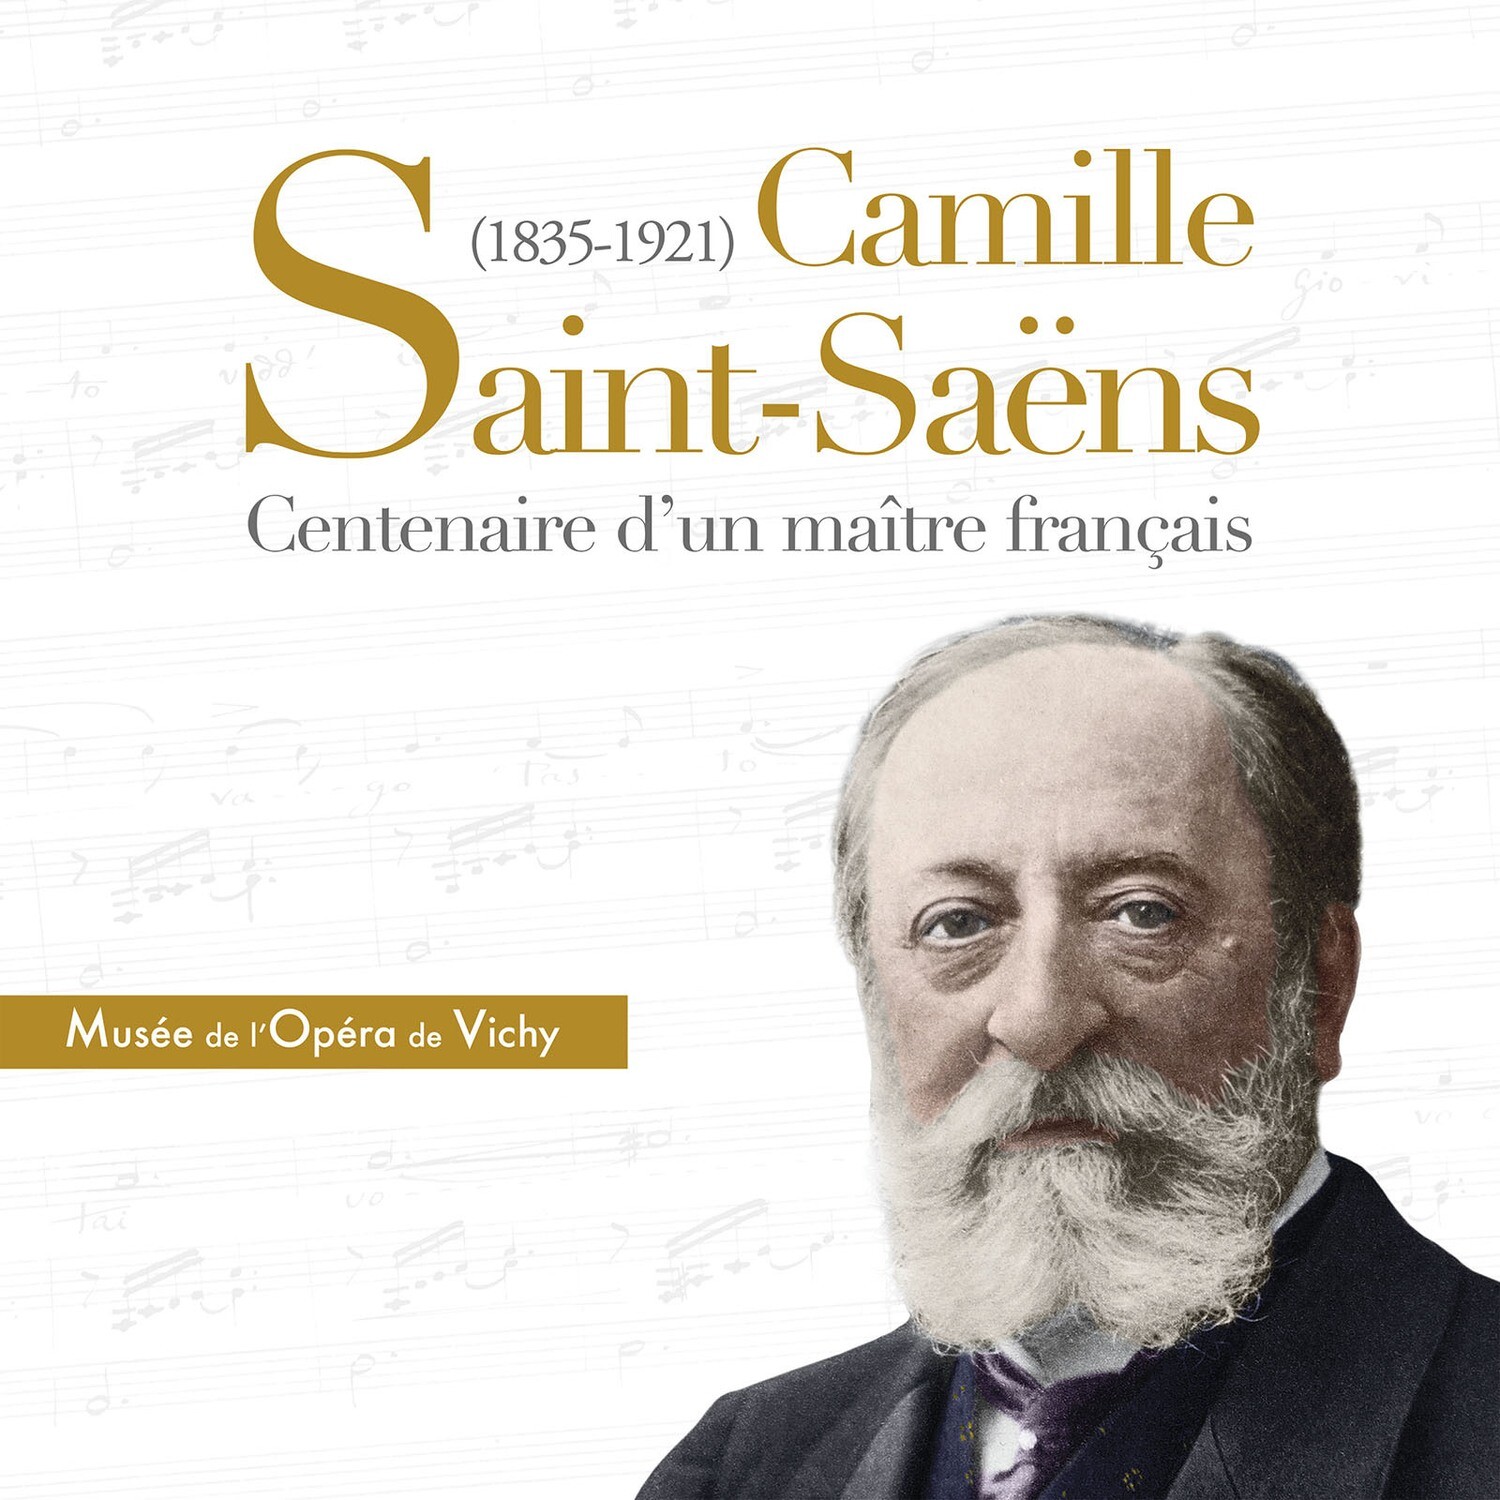 Camille Saint-Saëns (1835-1921), centenaire d'un maître français